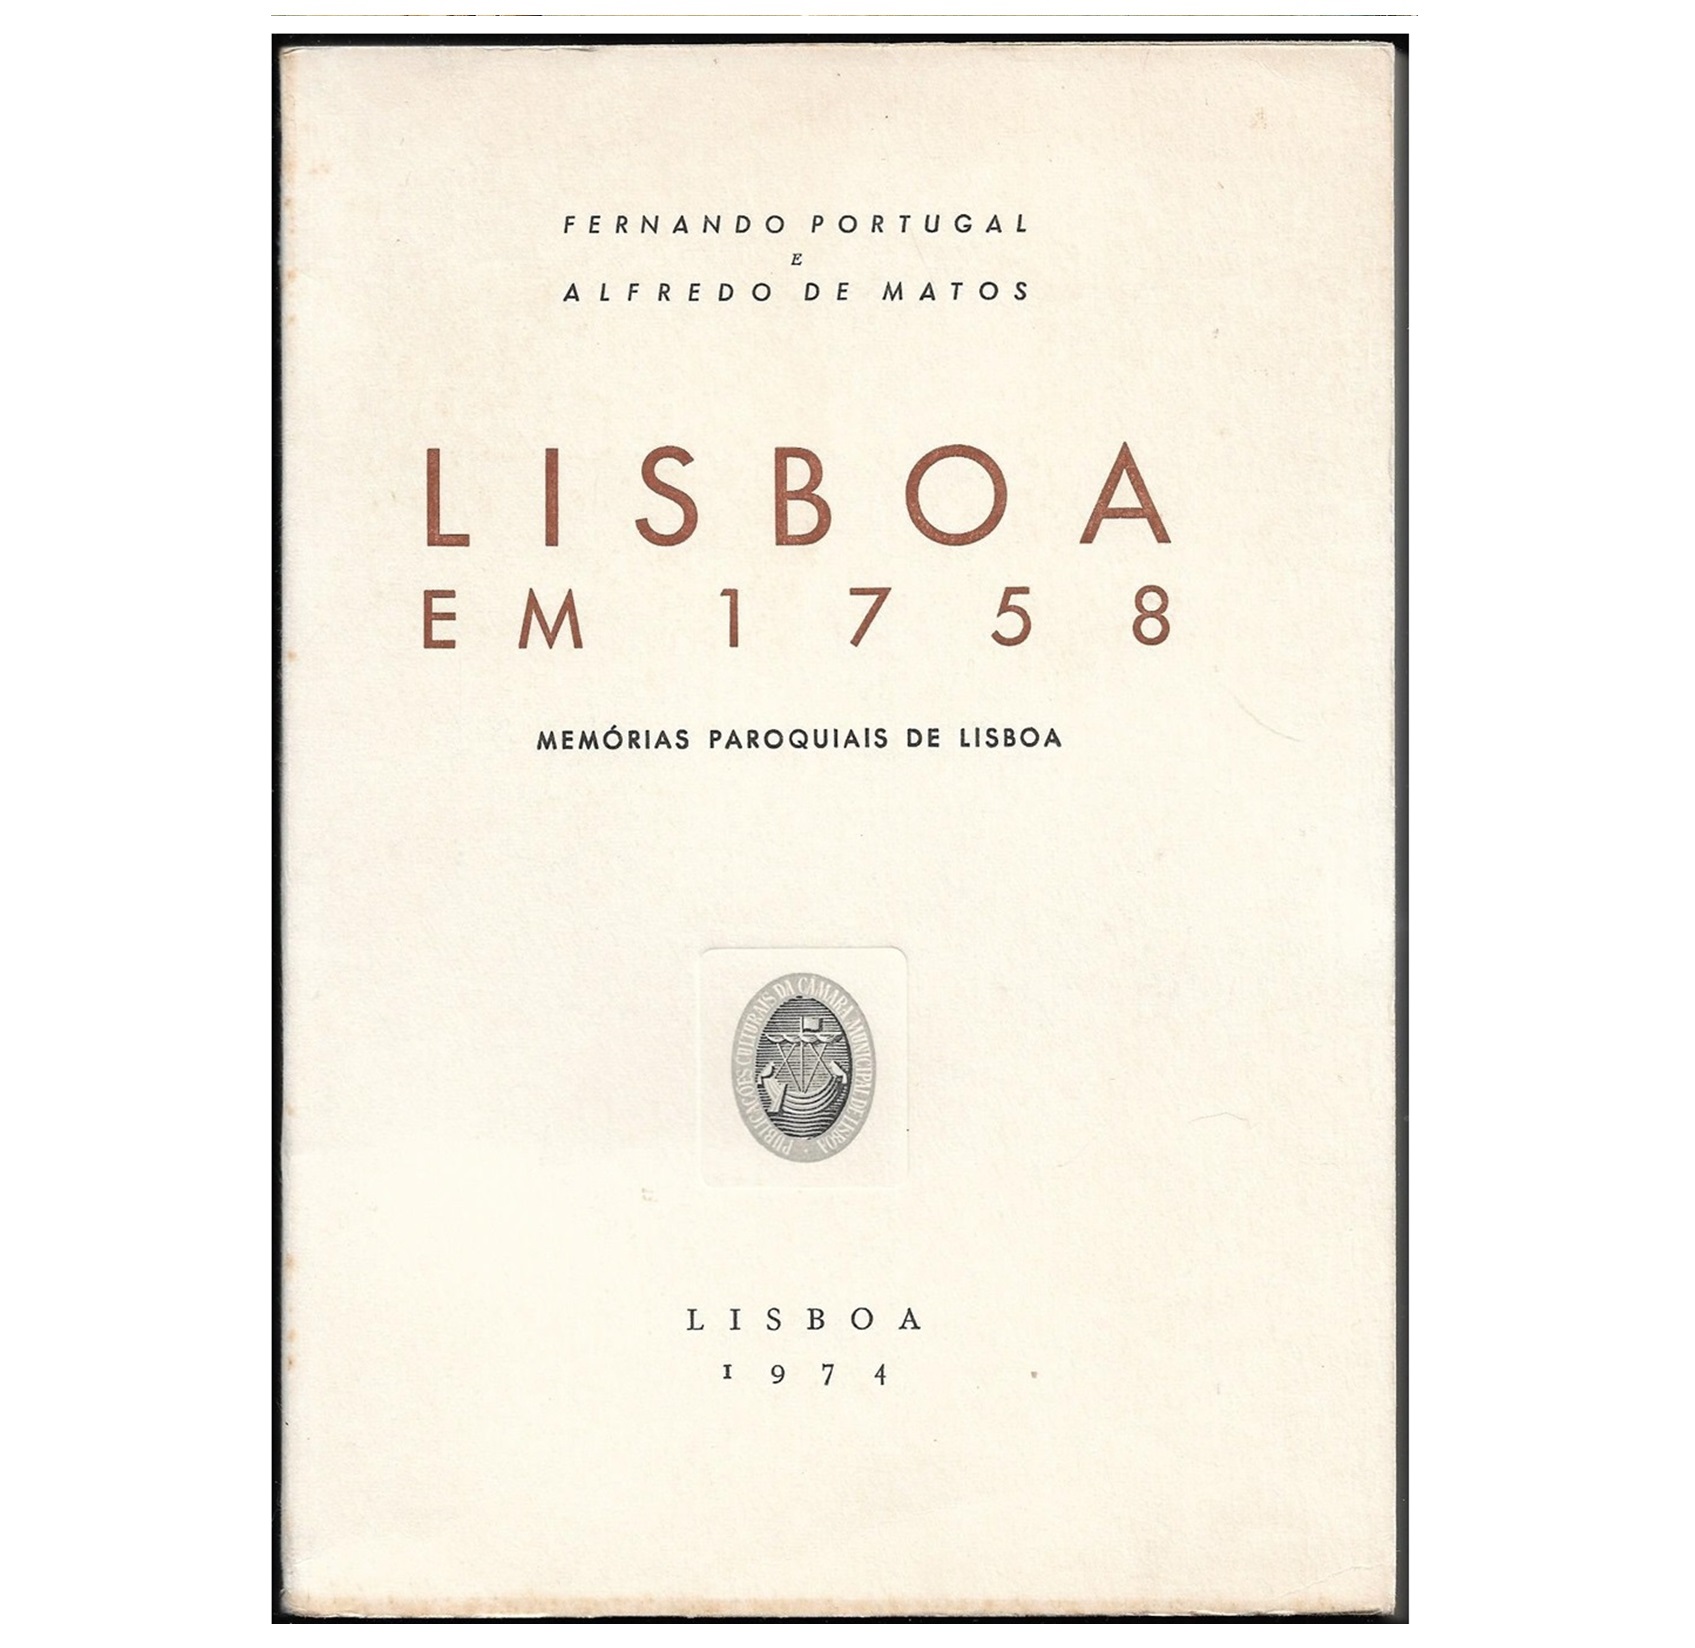  LISBOA EM 1758. MEMÓRIAS PAROQUIAIS DE LISBOA